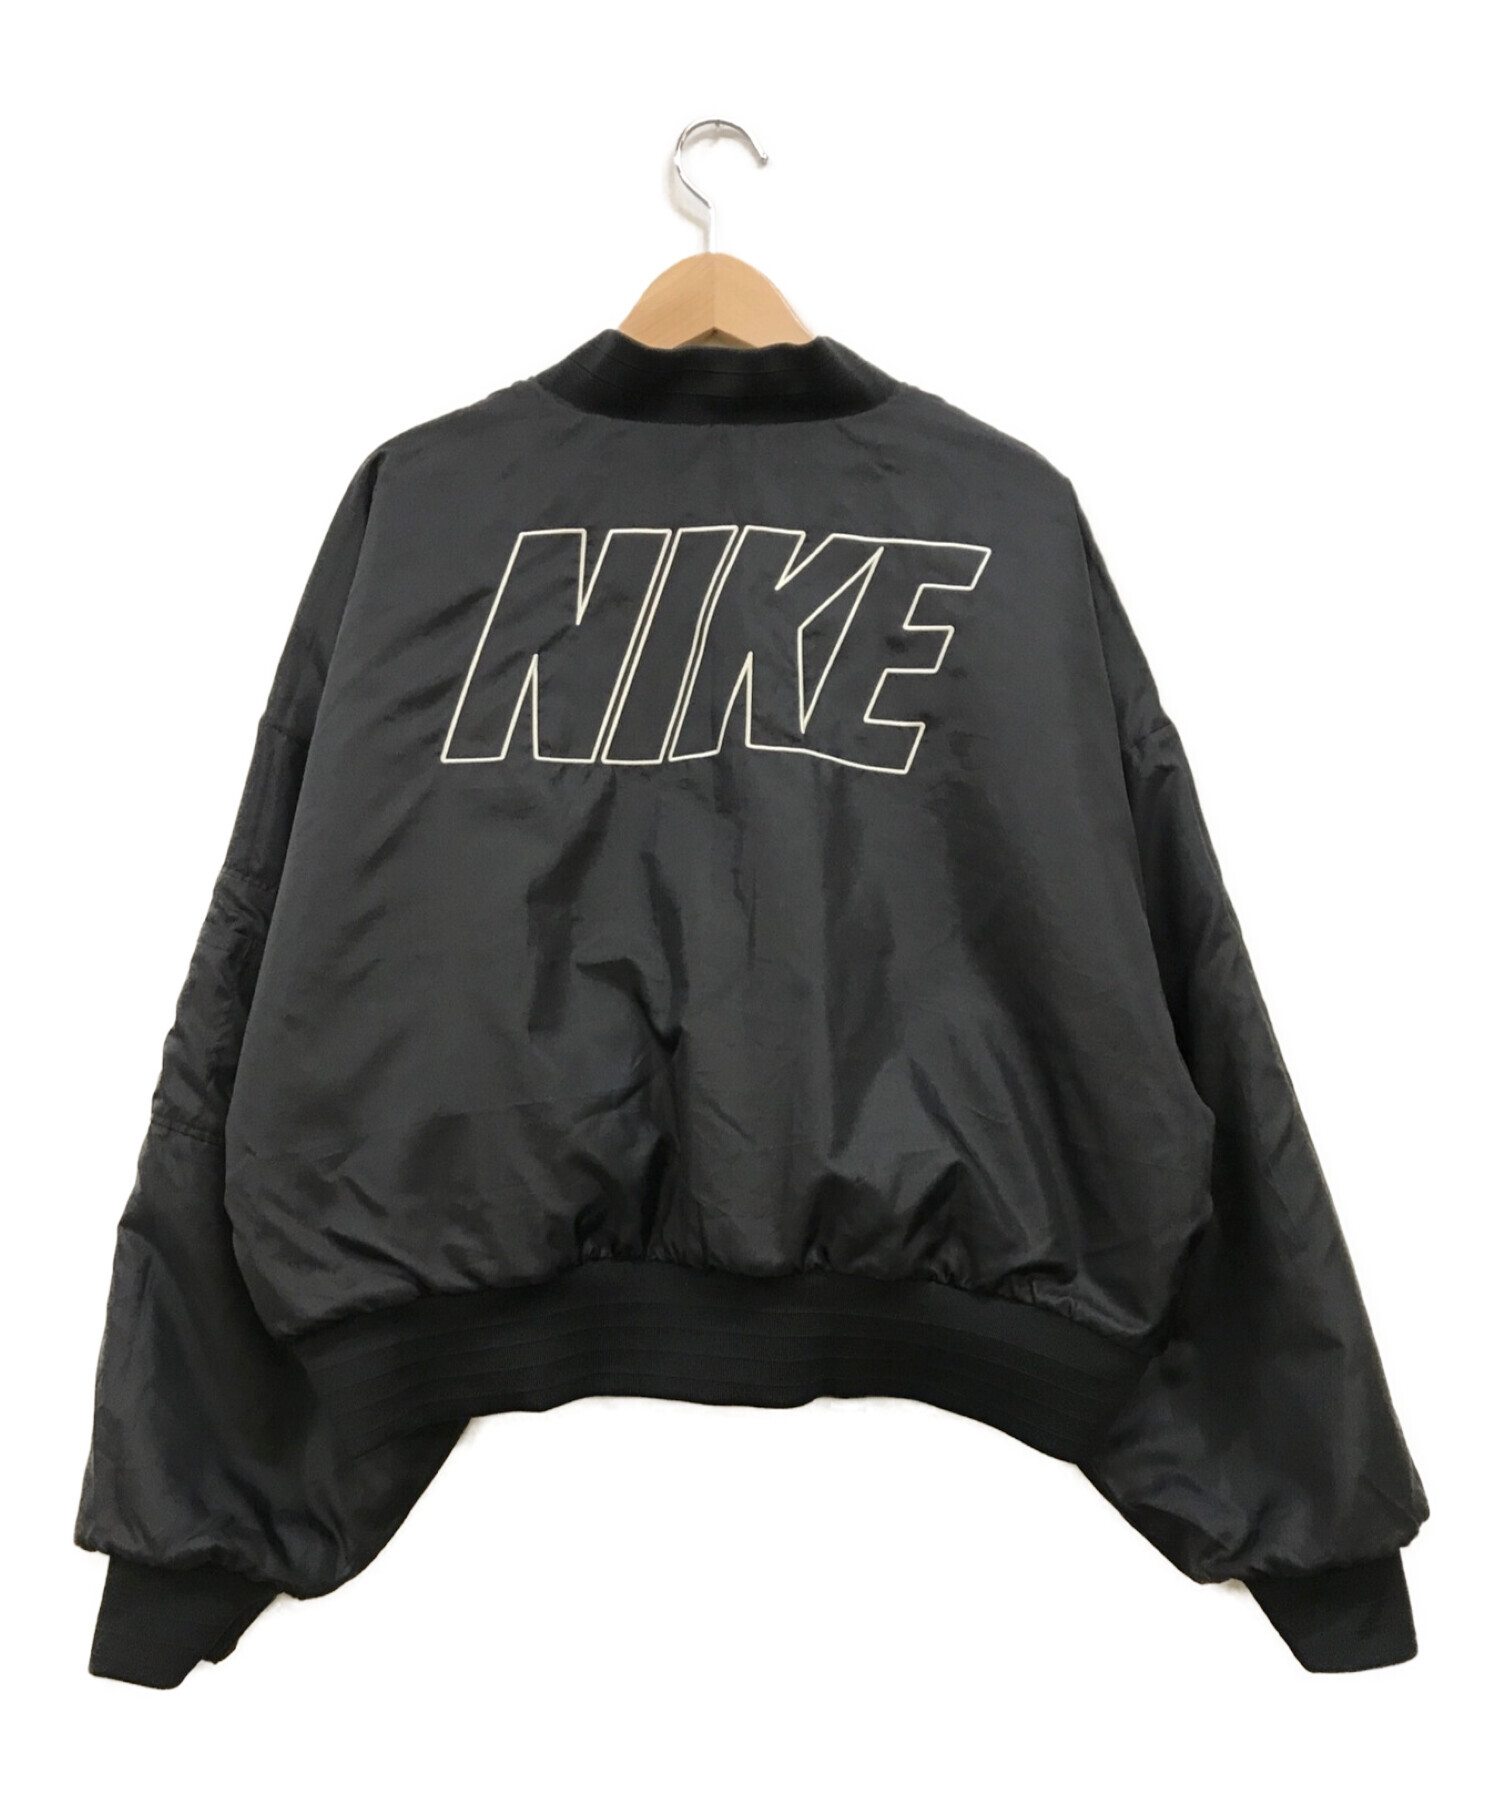 NIKE (ナイキ) リバーシブル フェイクファー ボンバージャケット ブラック サイズ:L